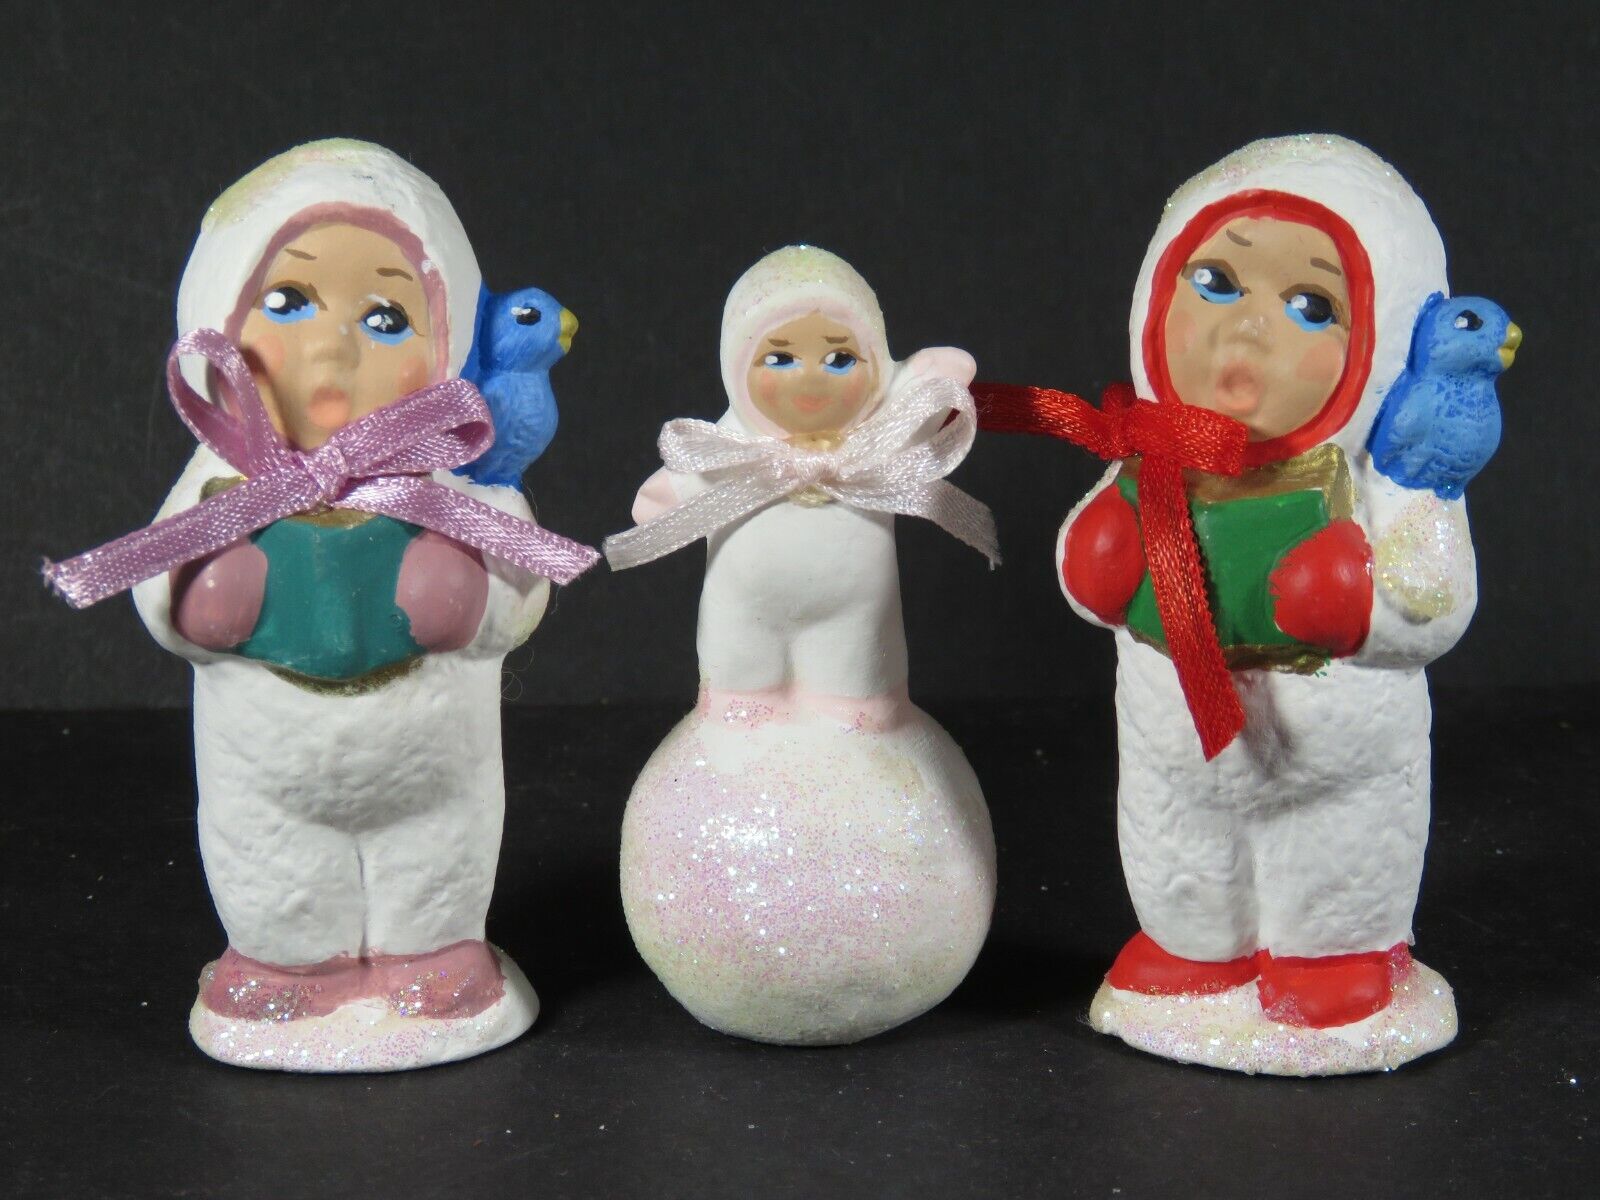 Vintage Snow Eskimo Babies Christmas Figures Glitter Ceramic Hand Painted B3688